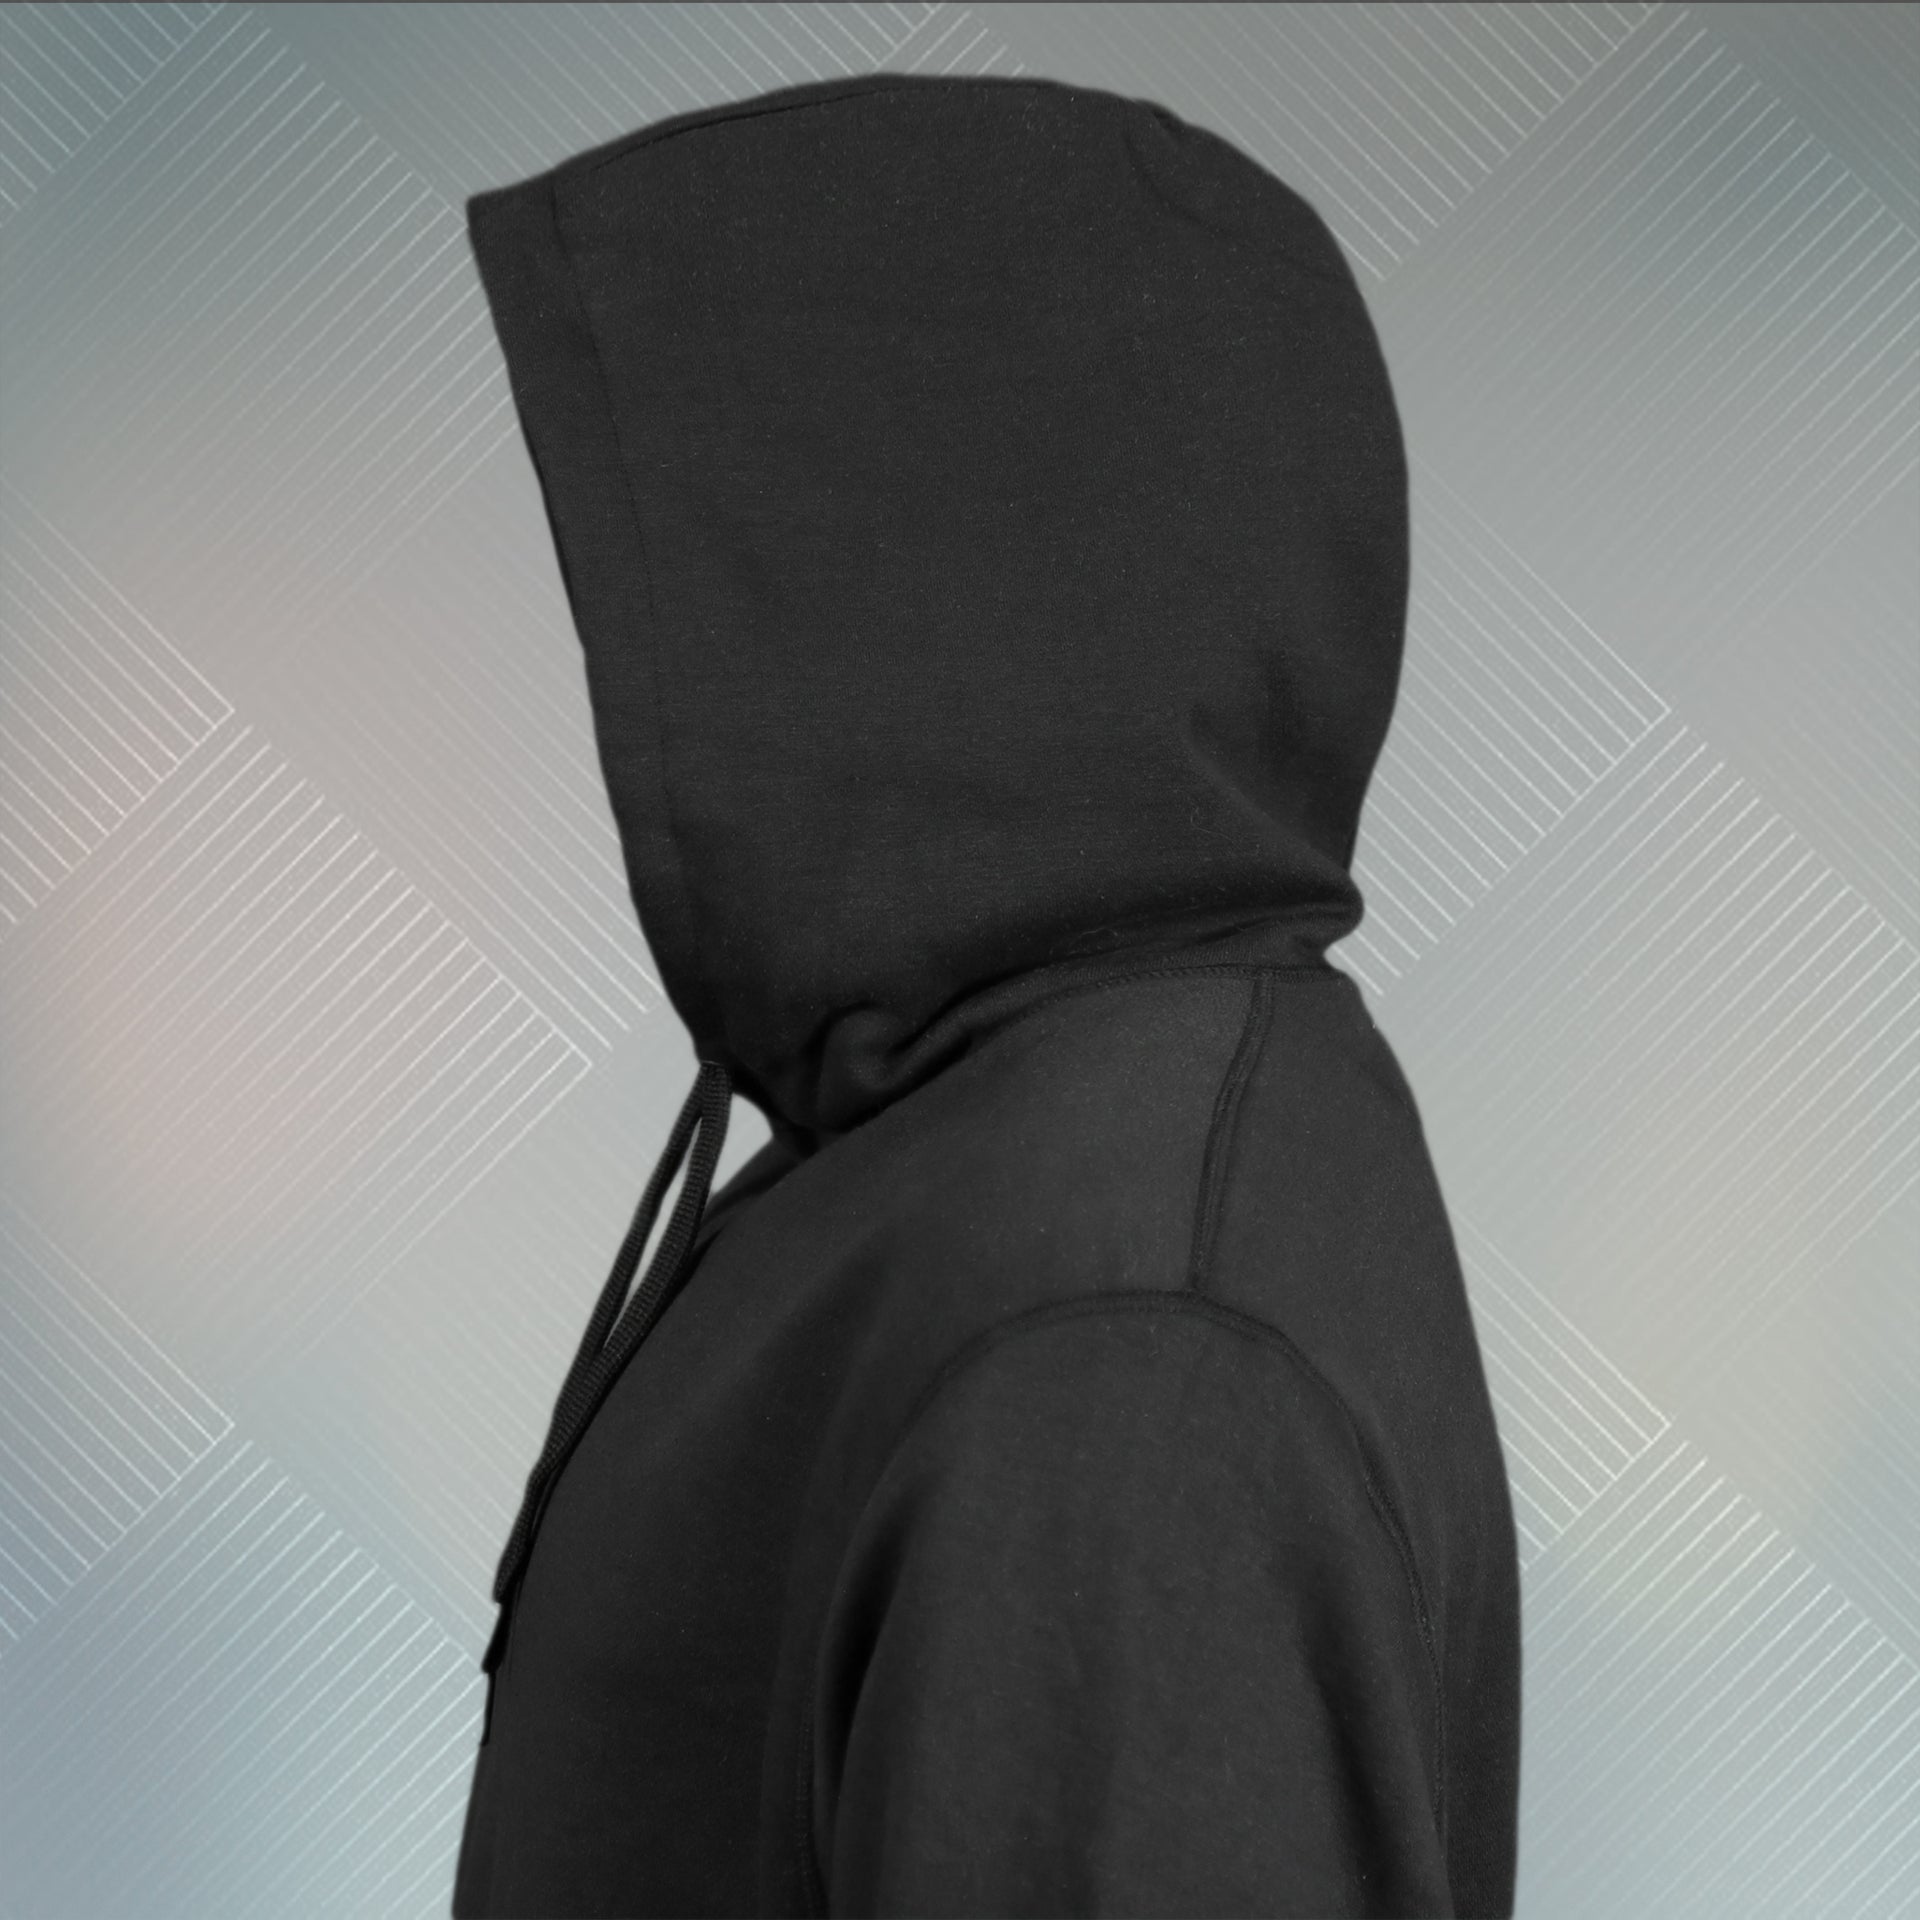 hoodie of the Jet Black Unbasic Fleece Stash Pocket Sunset Park Tapered Pullover Hoodie | Fleece Black Hoodie